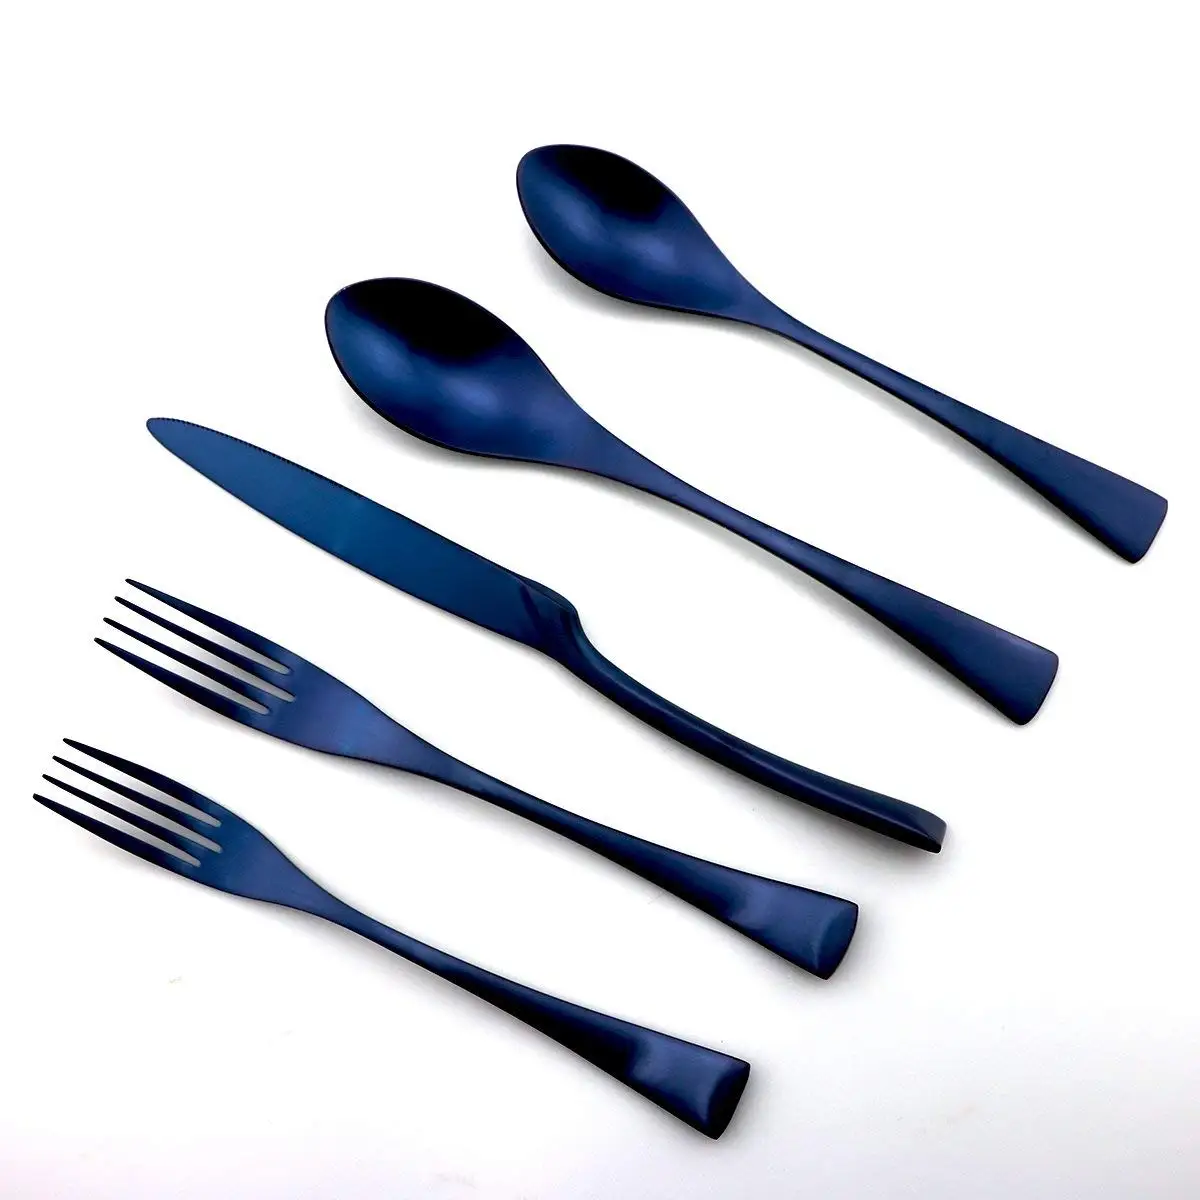 Роскошные 24 шт 18/10 из нержавеющей стали Silversmiths столовая посуда синий матовый заменить титановый черный набор столовых приборов ужин десерт